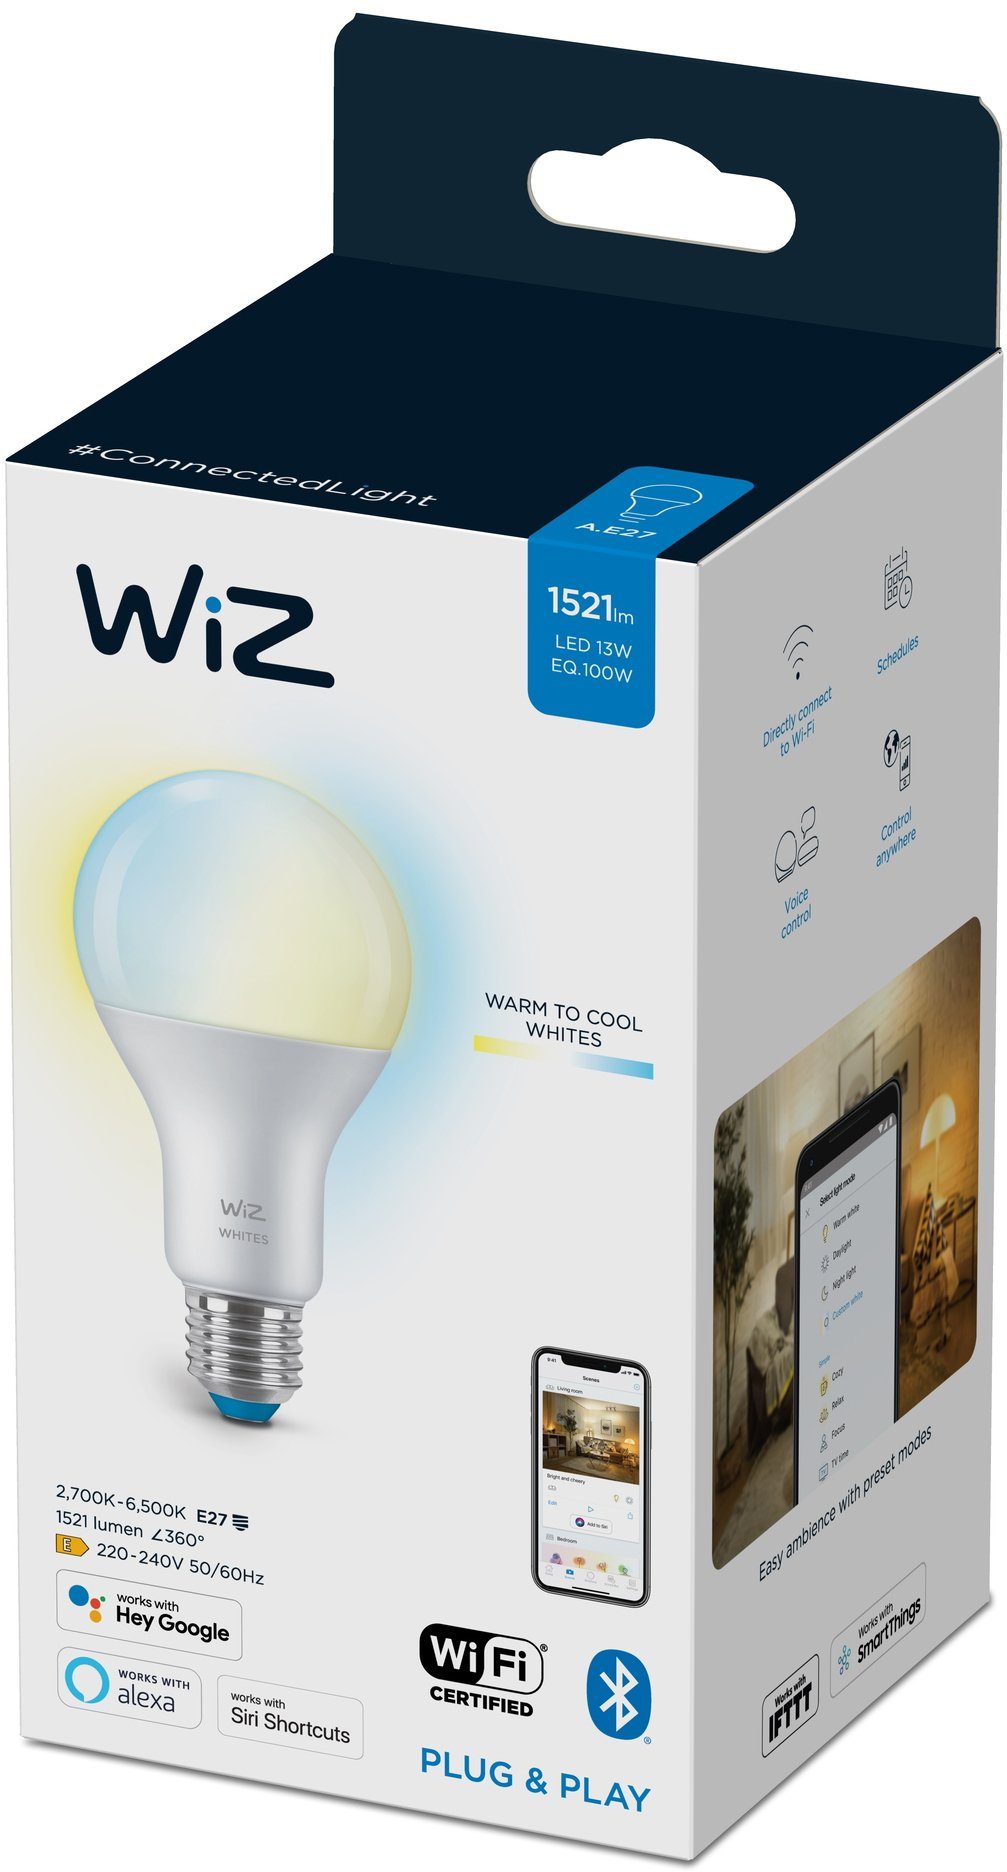 WiZ LED-Leuchtmittel White 100W E27 Standardform Tunable matt Einzelpack,  E27, 1 St., Warmweiß, Kreieren Sie mit Wiz Tunable White LED Lampen smarte  Beleuchtung, Hohe Farbwiedergabe für lebendige Farben (CRI > 90)